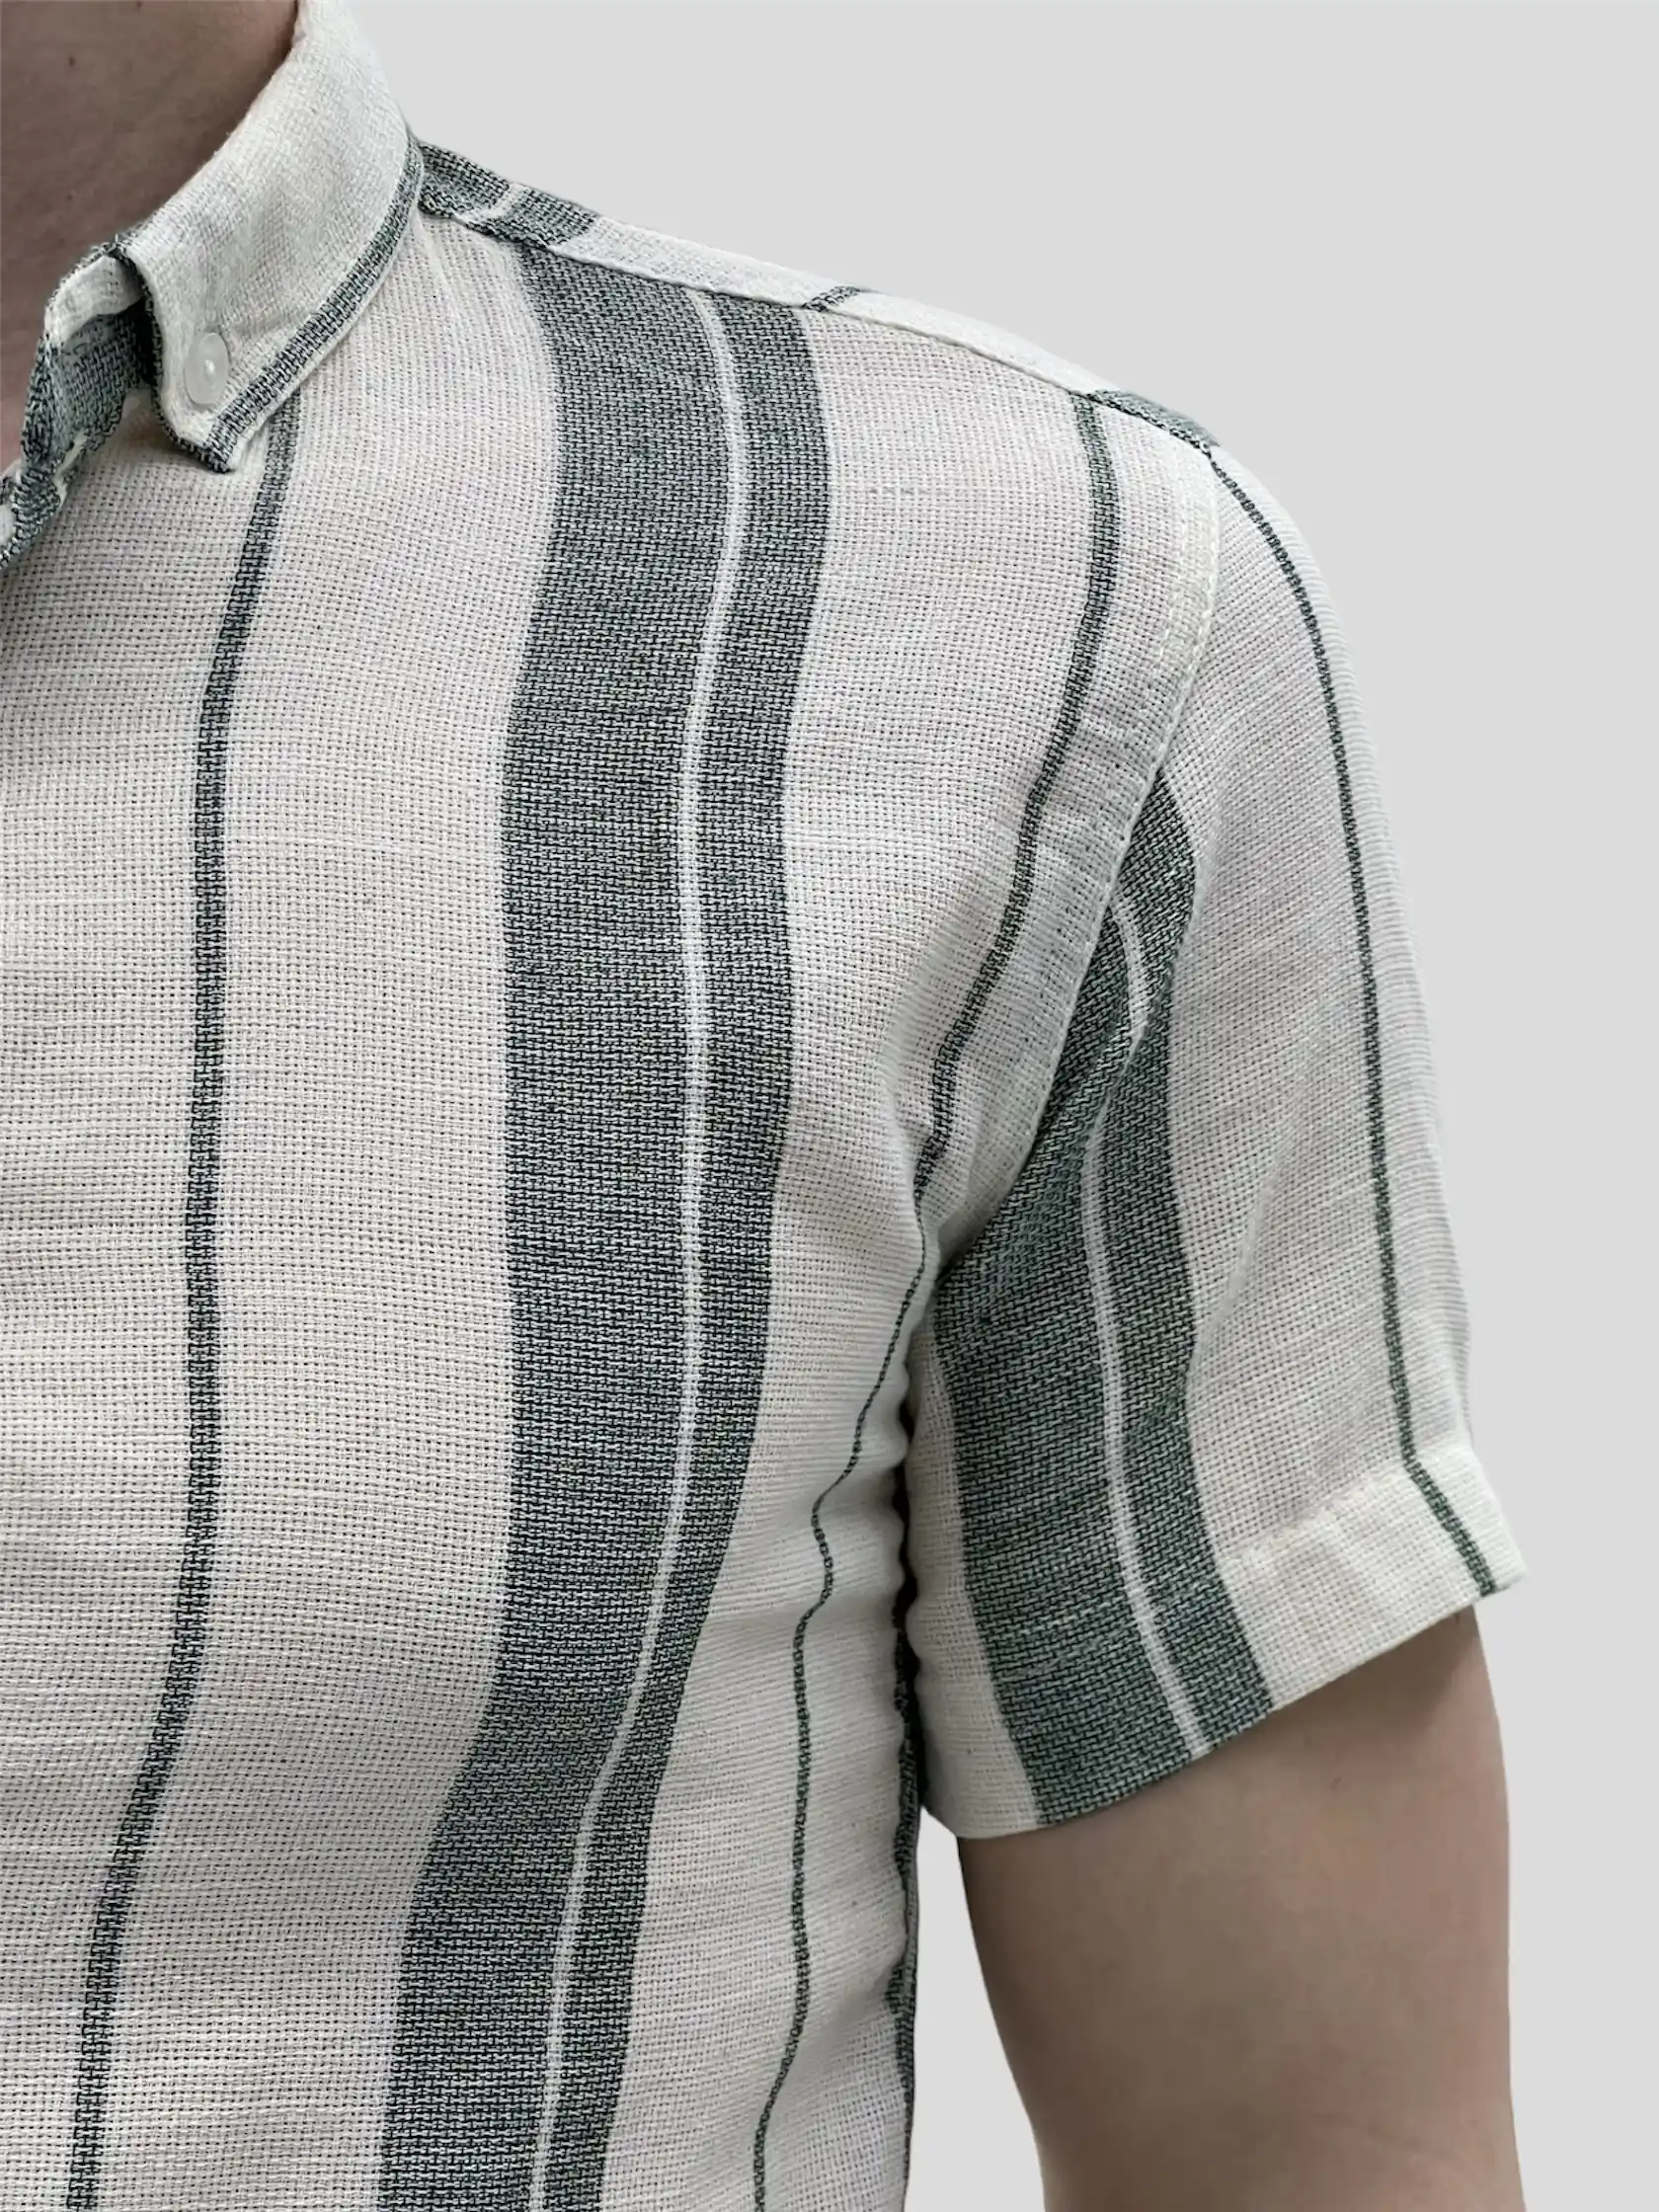 Αντρικό πουκάμισο κανονική γραμμή κοντομάνικο μπεζ με πράσινη ρίγα